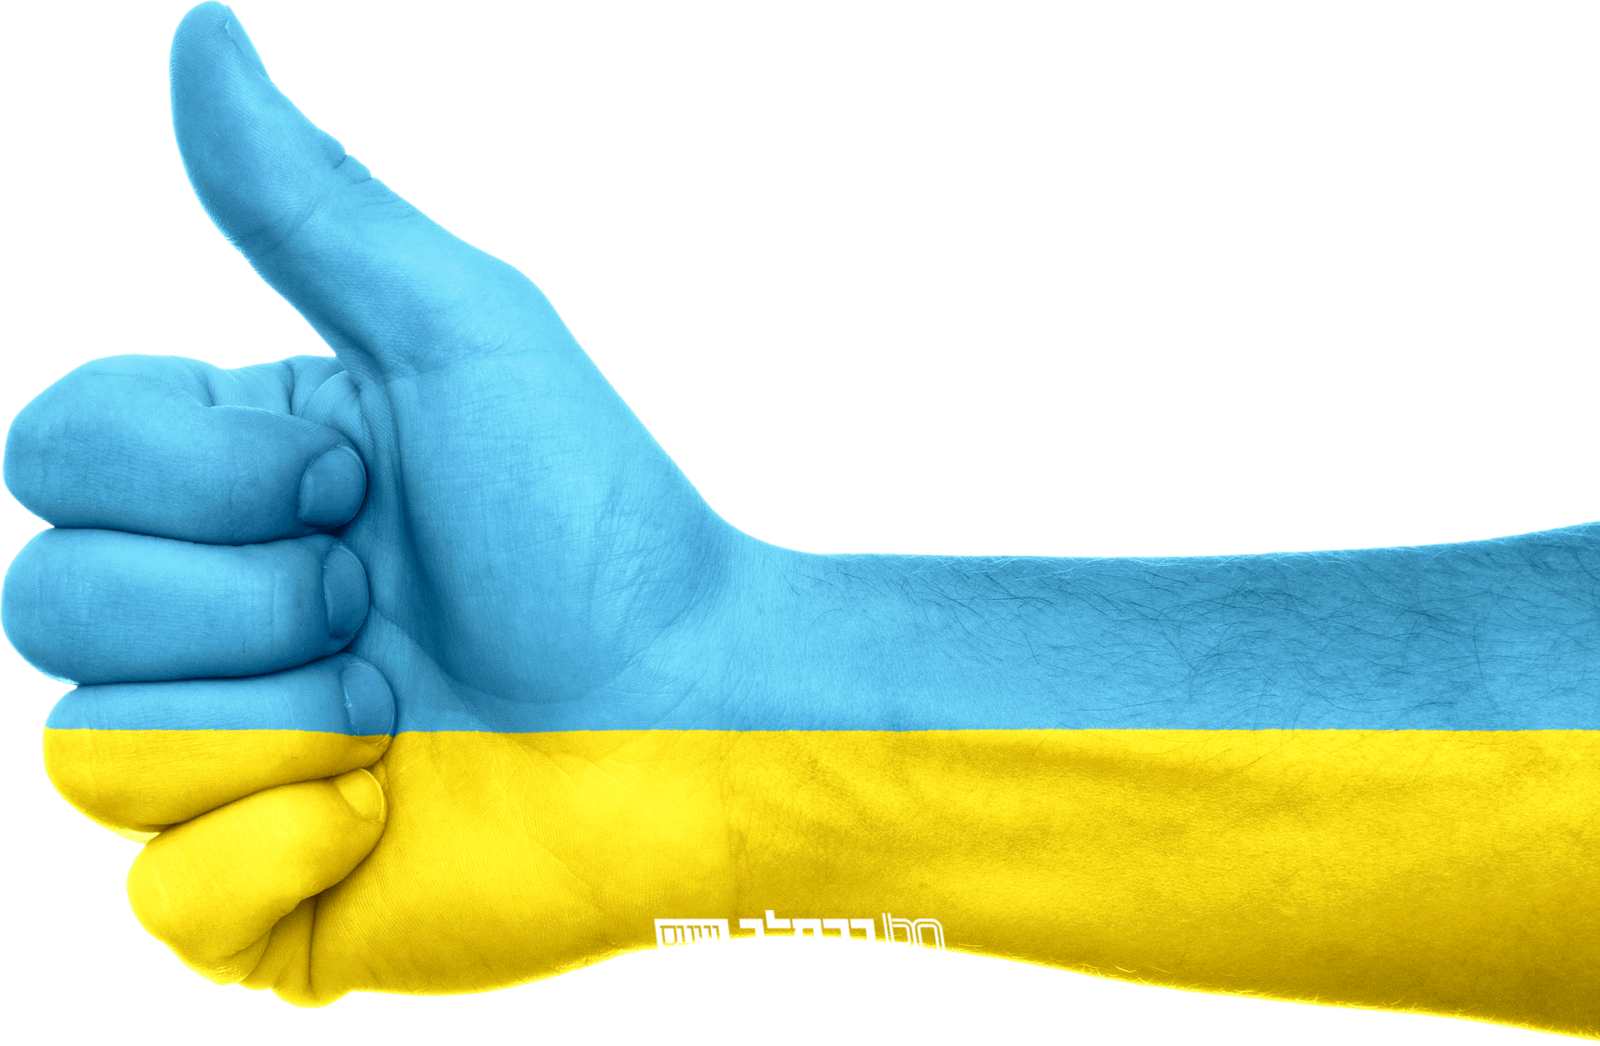 אוקראינה האנטישמית 2020